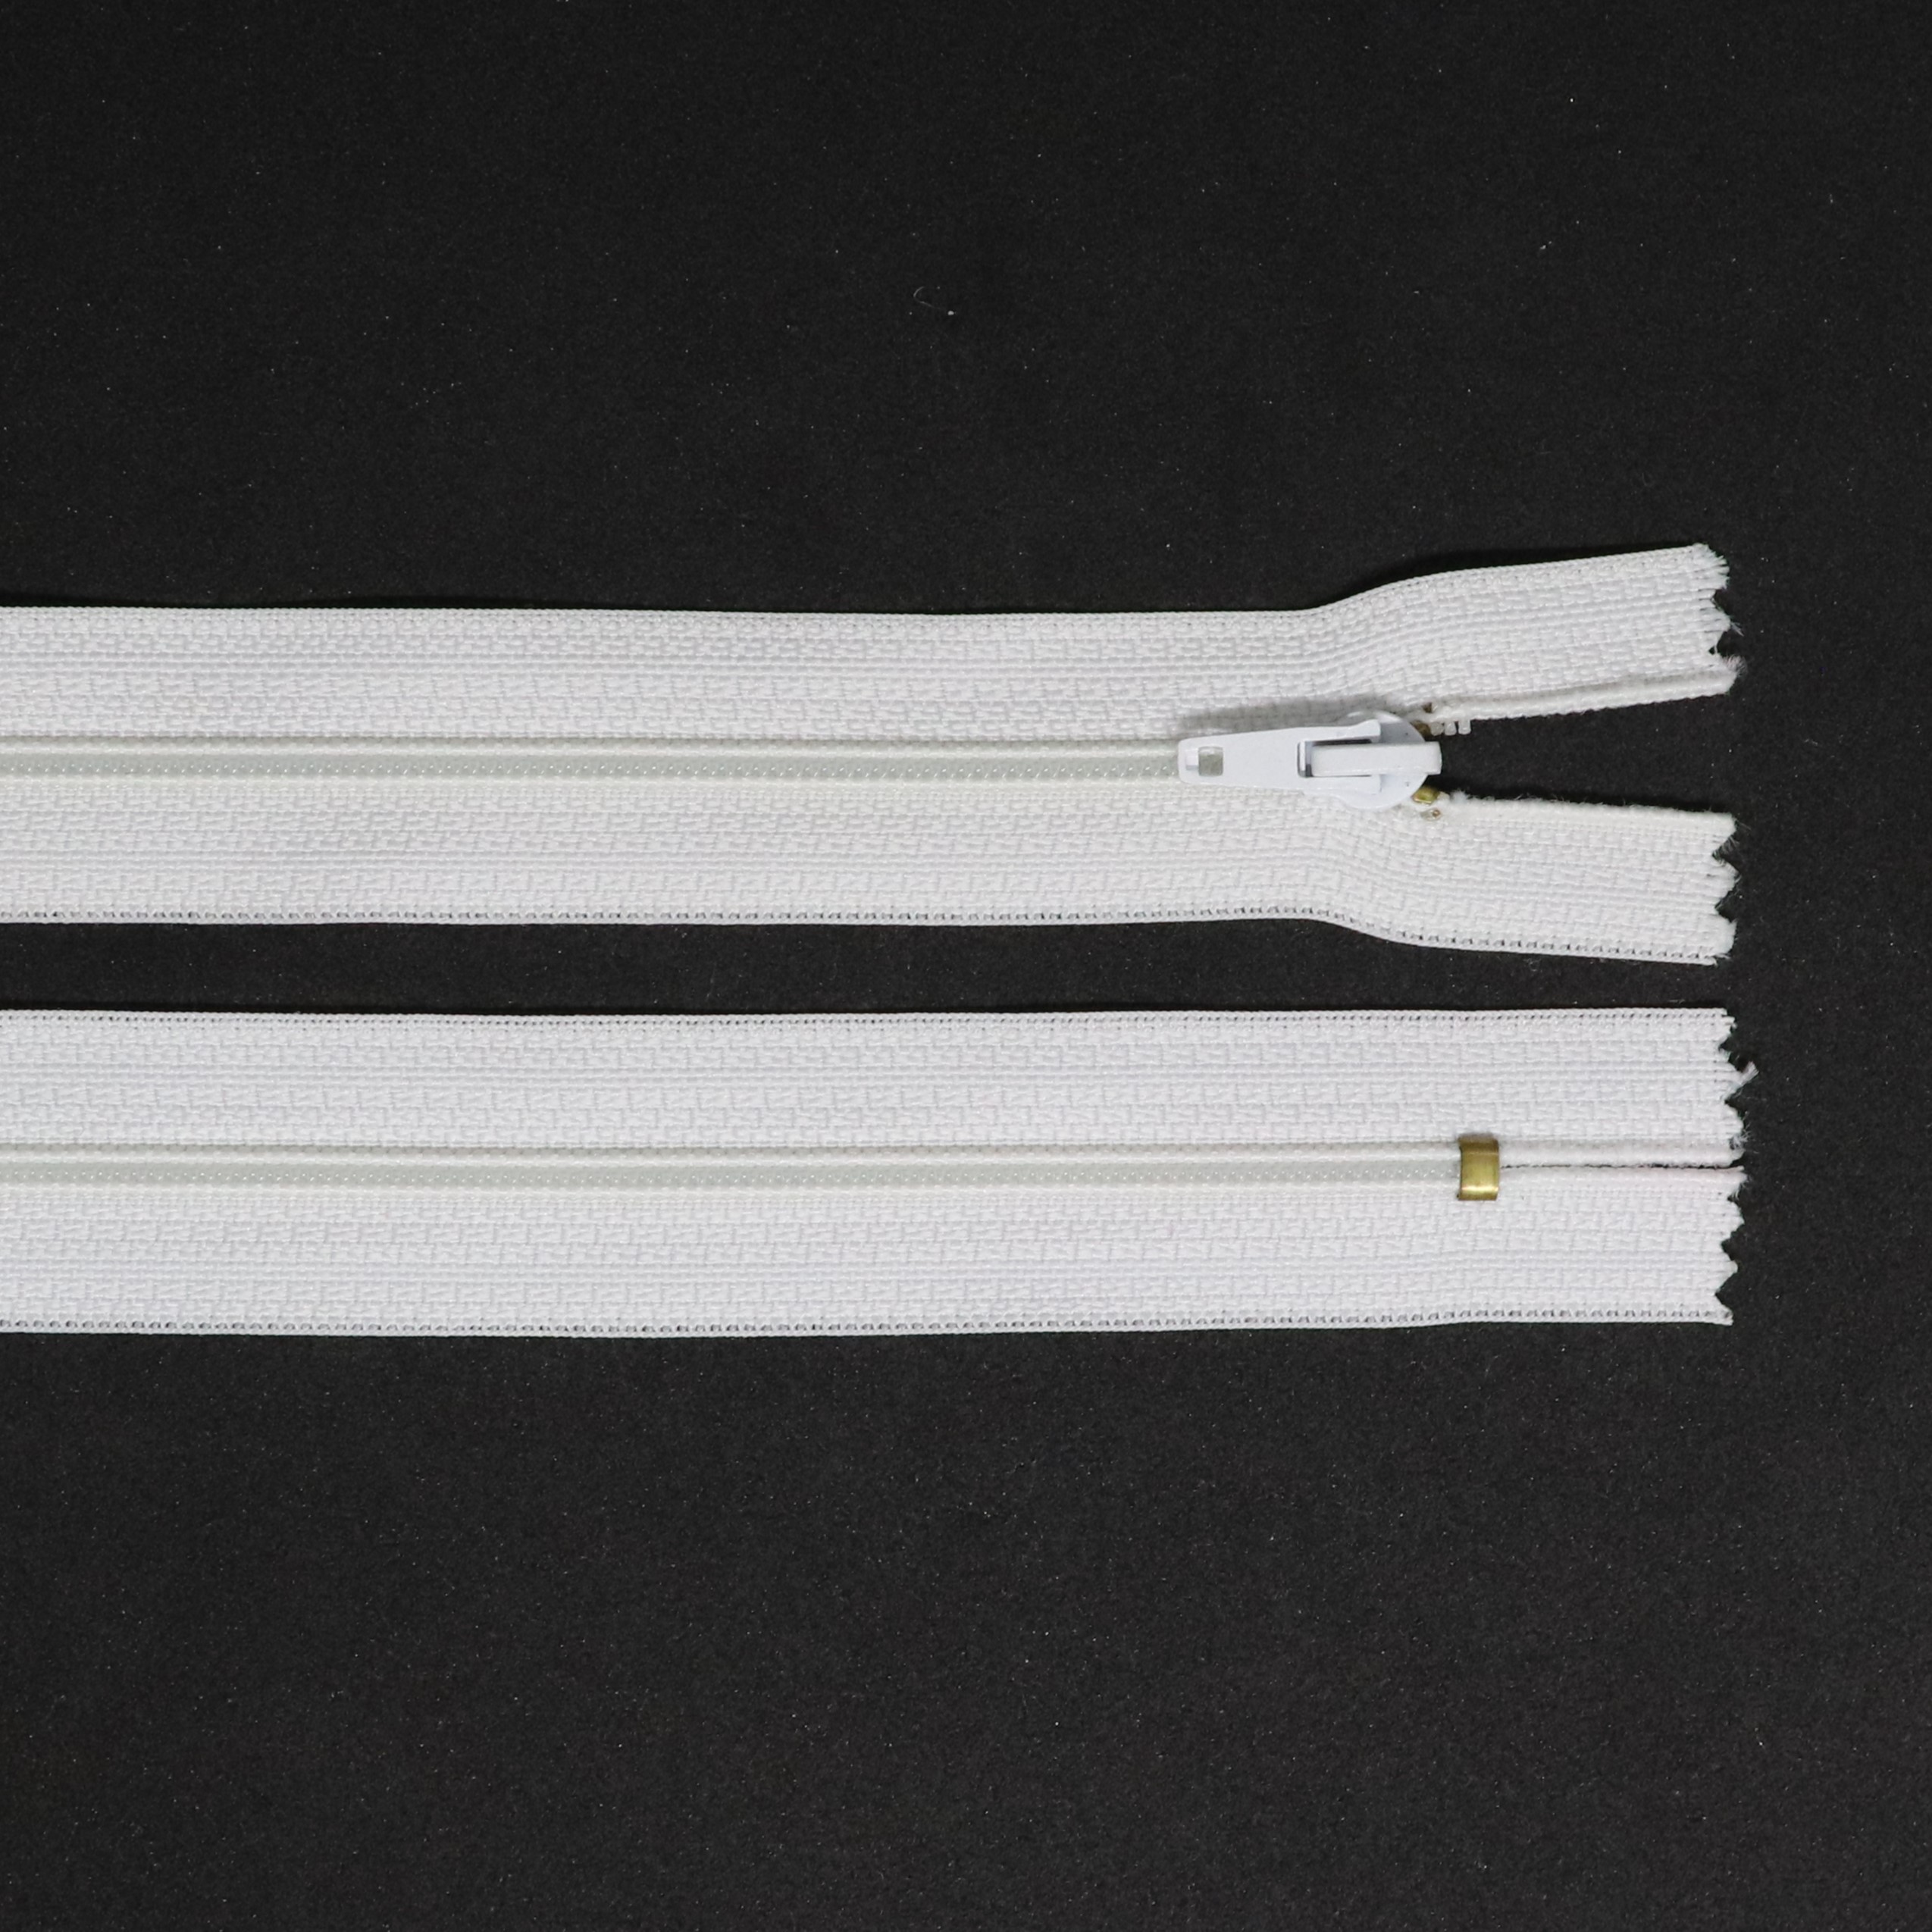 Spirálový zip, šíøe 3 mm, délka 20 cm, bílá - zvìtšit obrázek